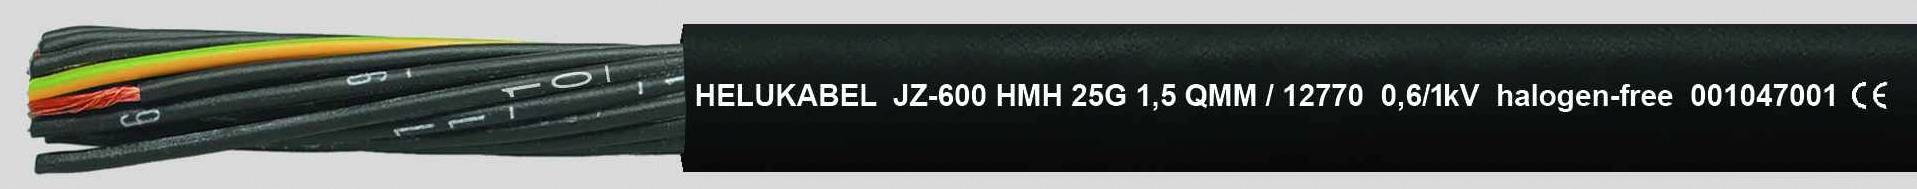 HELUKABEL HELU OZ-600 HMH 2x1,5 12759 Schwarz Steuerleitung halogenfrei